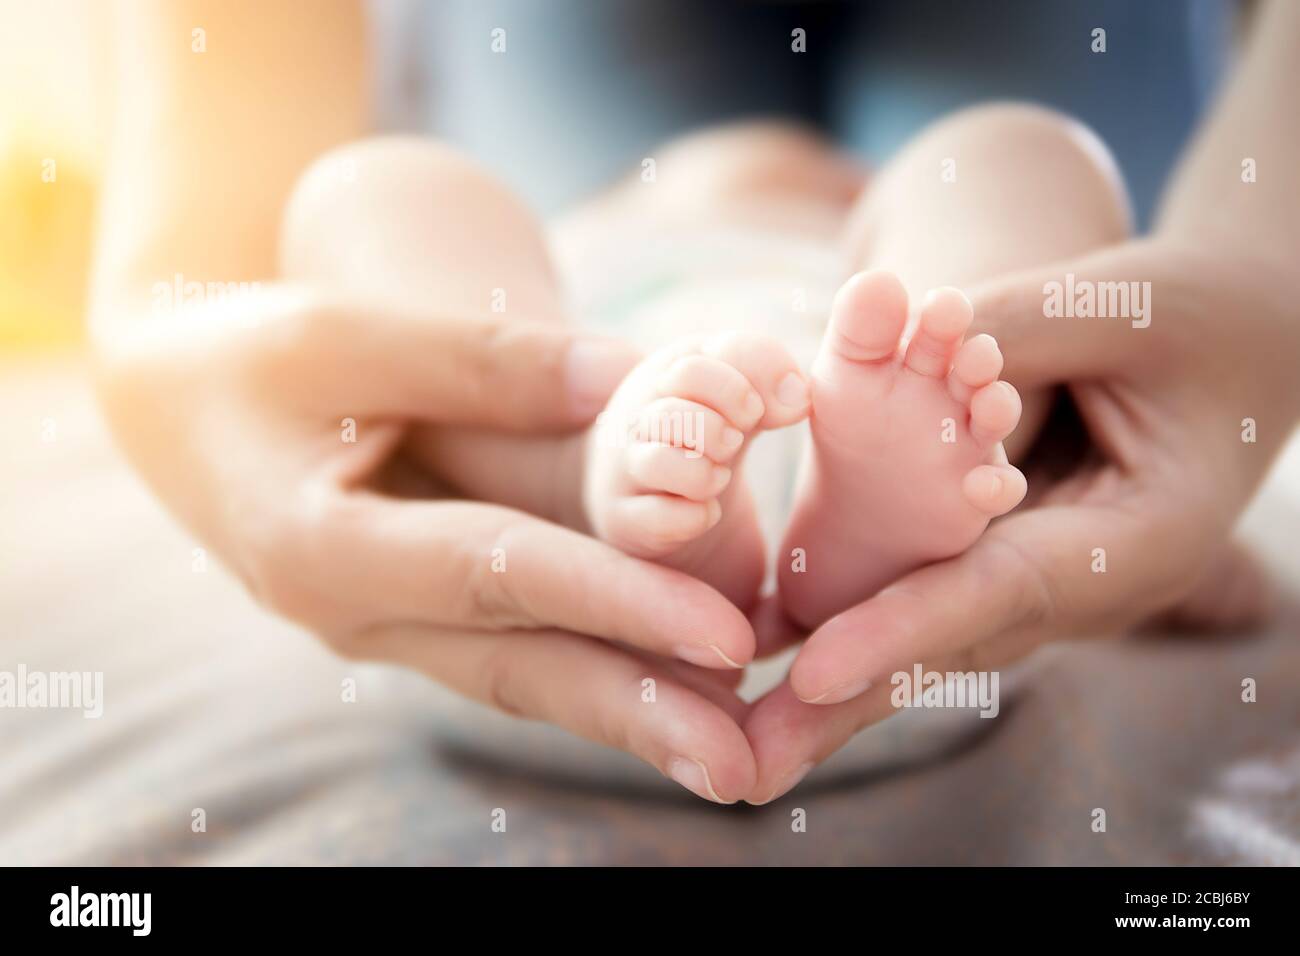 Buon rapporto nel concetto di famiglia : i piedi del bambino del neonato nelle mani della madre. Il genitore tiene i piedi piccoli del bambino neonato nelle mani con cura delicata Foto Stock